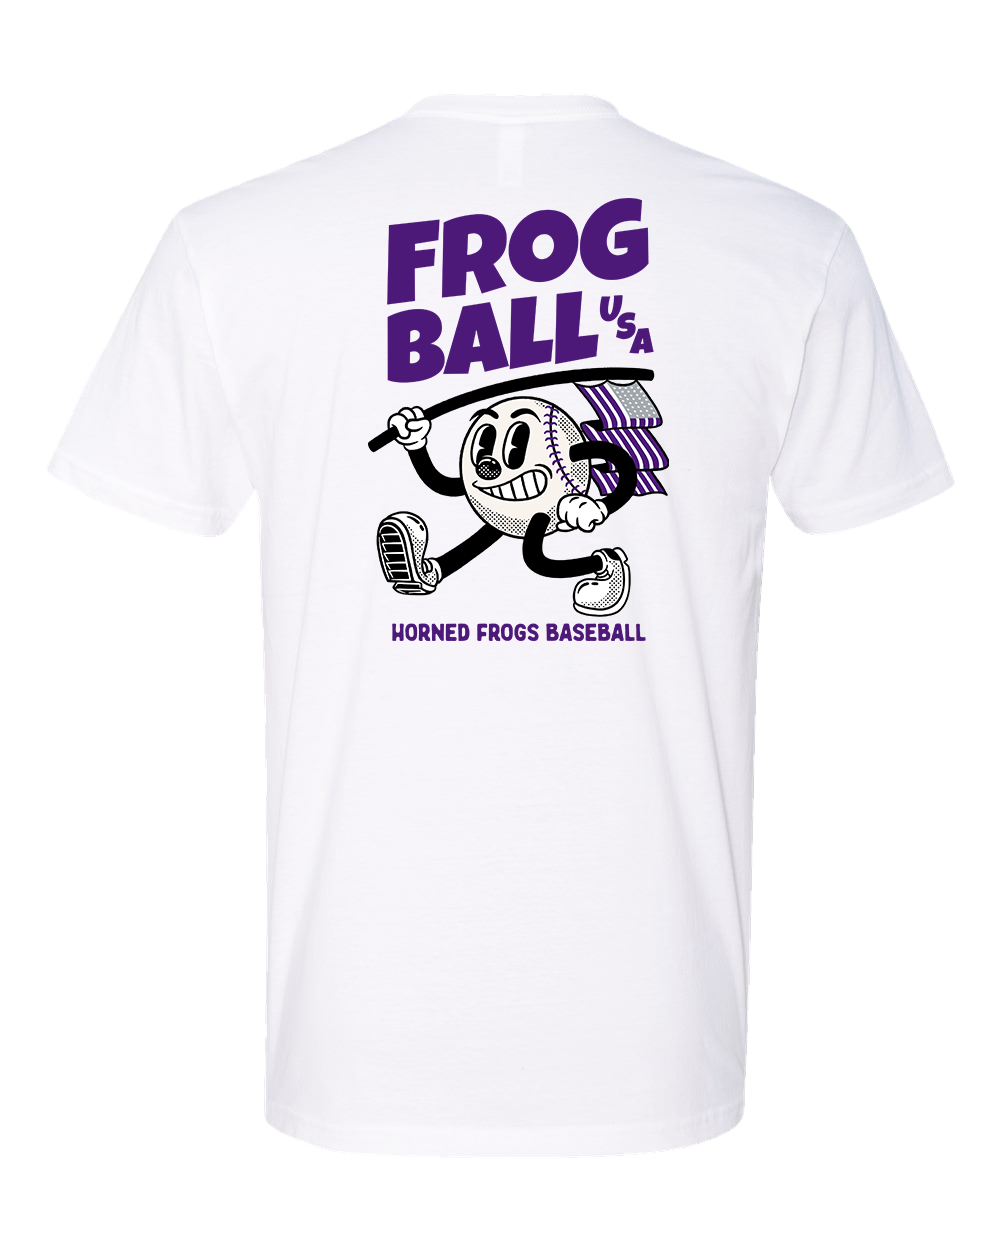 Frogball, USA Youth Tee